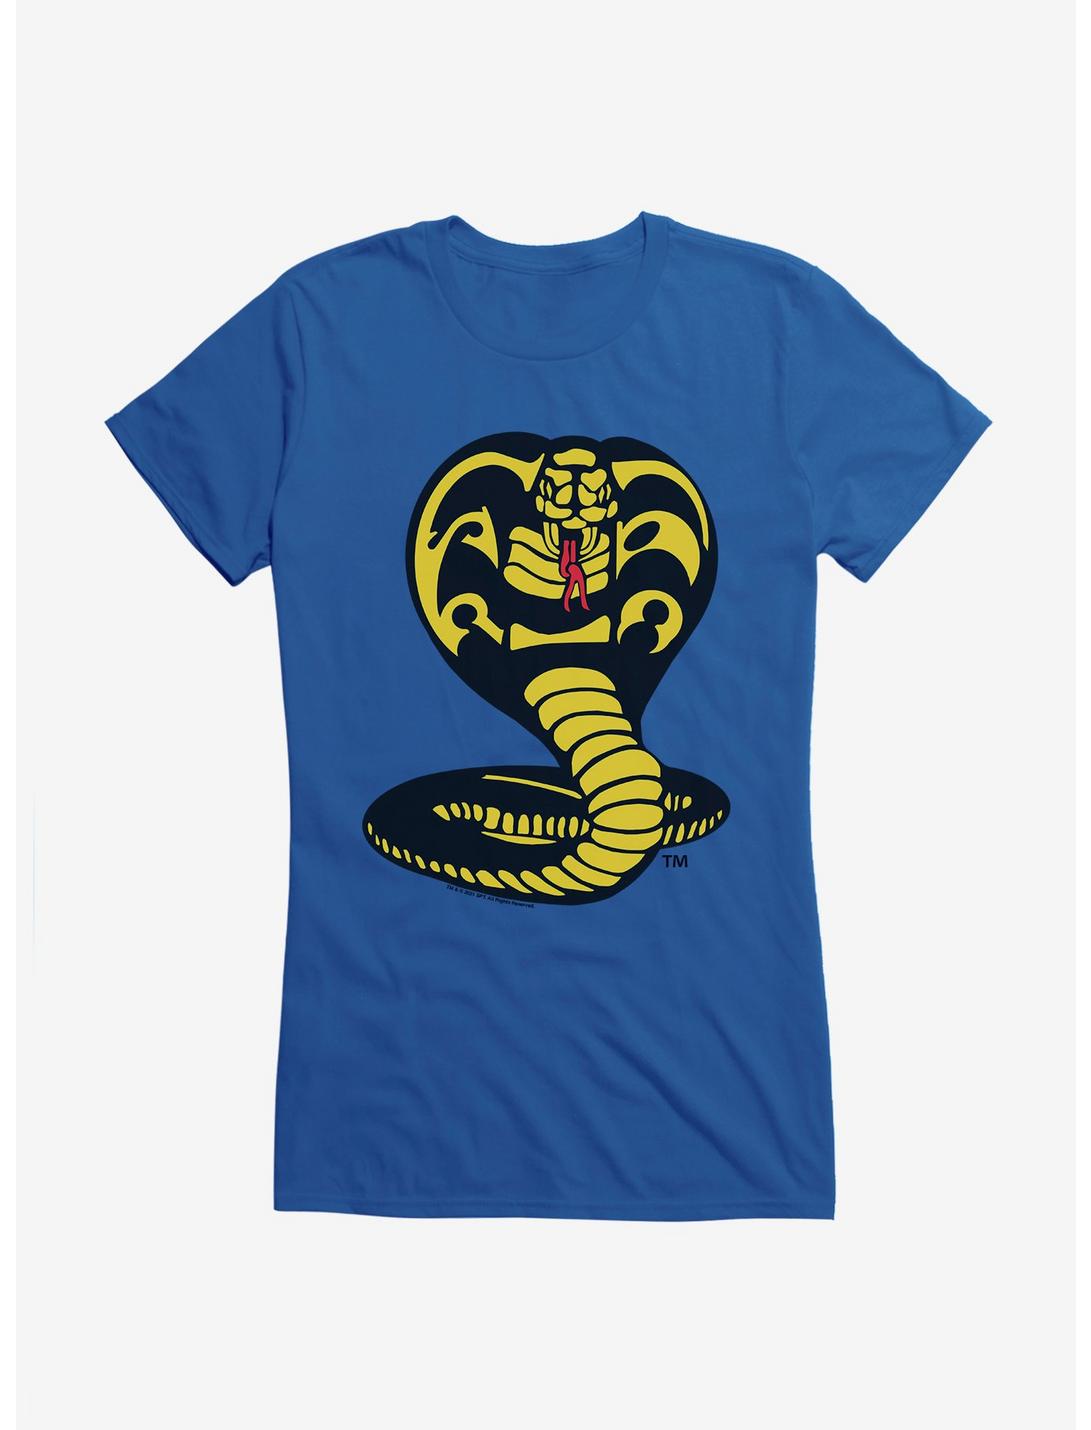 Cobra Kai Logo Girls T-Shirt, ROYAL, hi-res